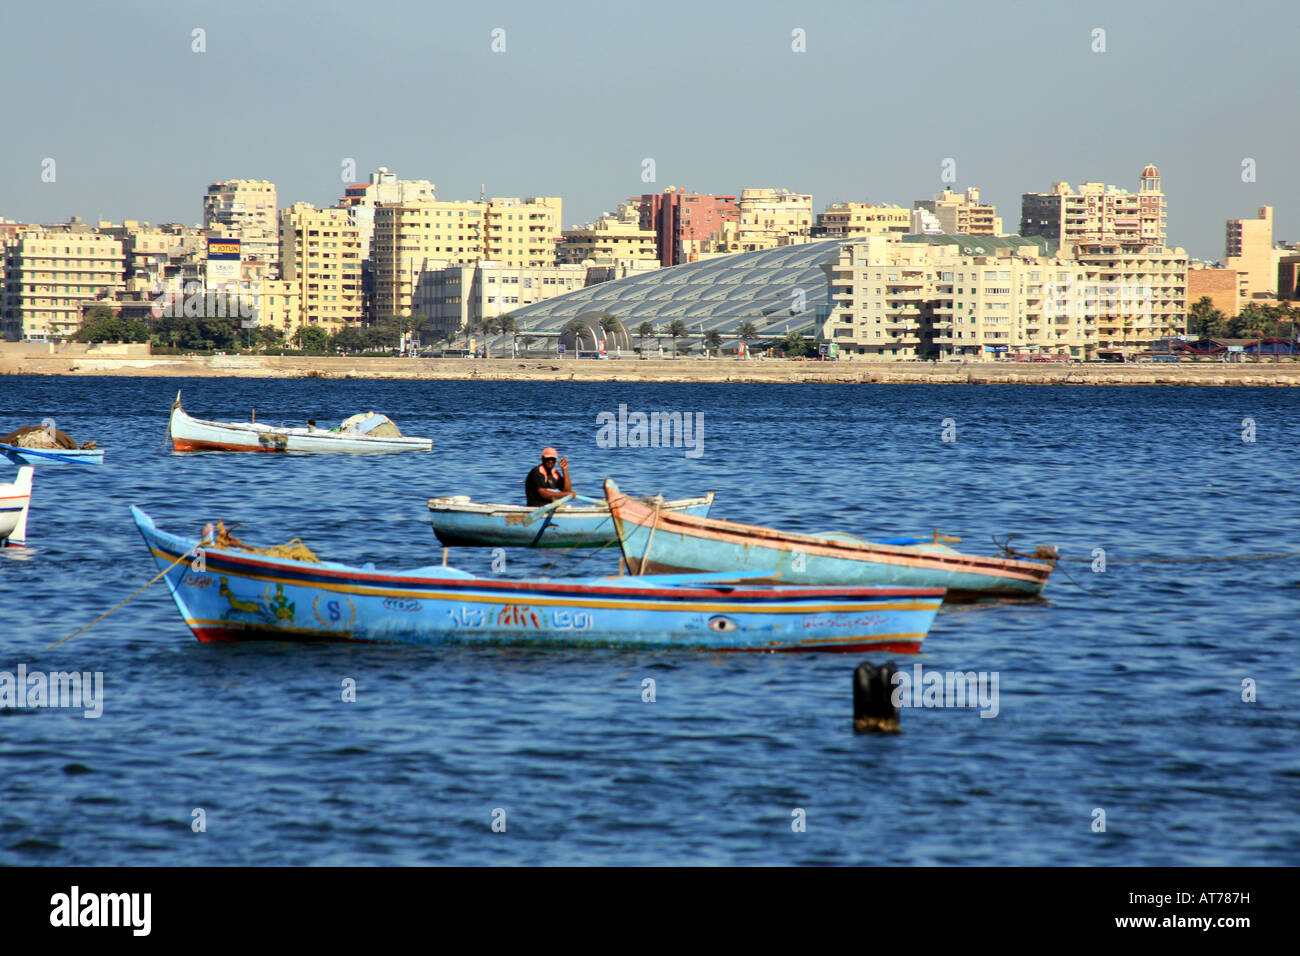 Skyline et bateaux de pêche dans l'Est de Port Alexandrie Egypte Banque D'Images